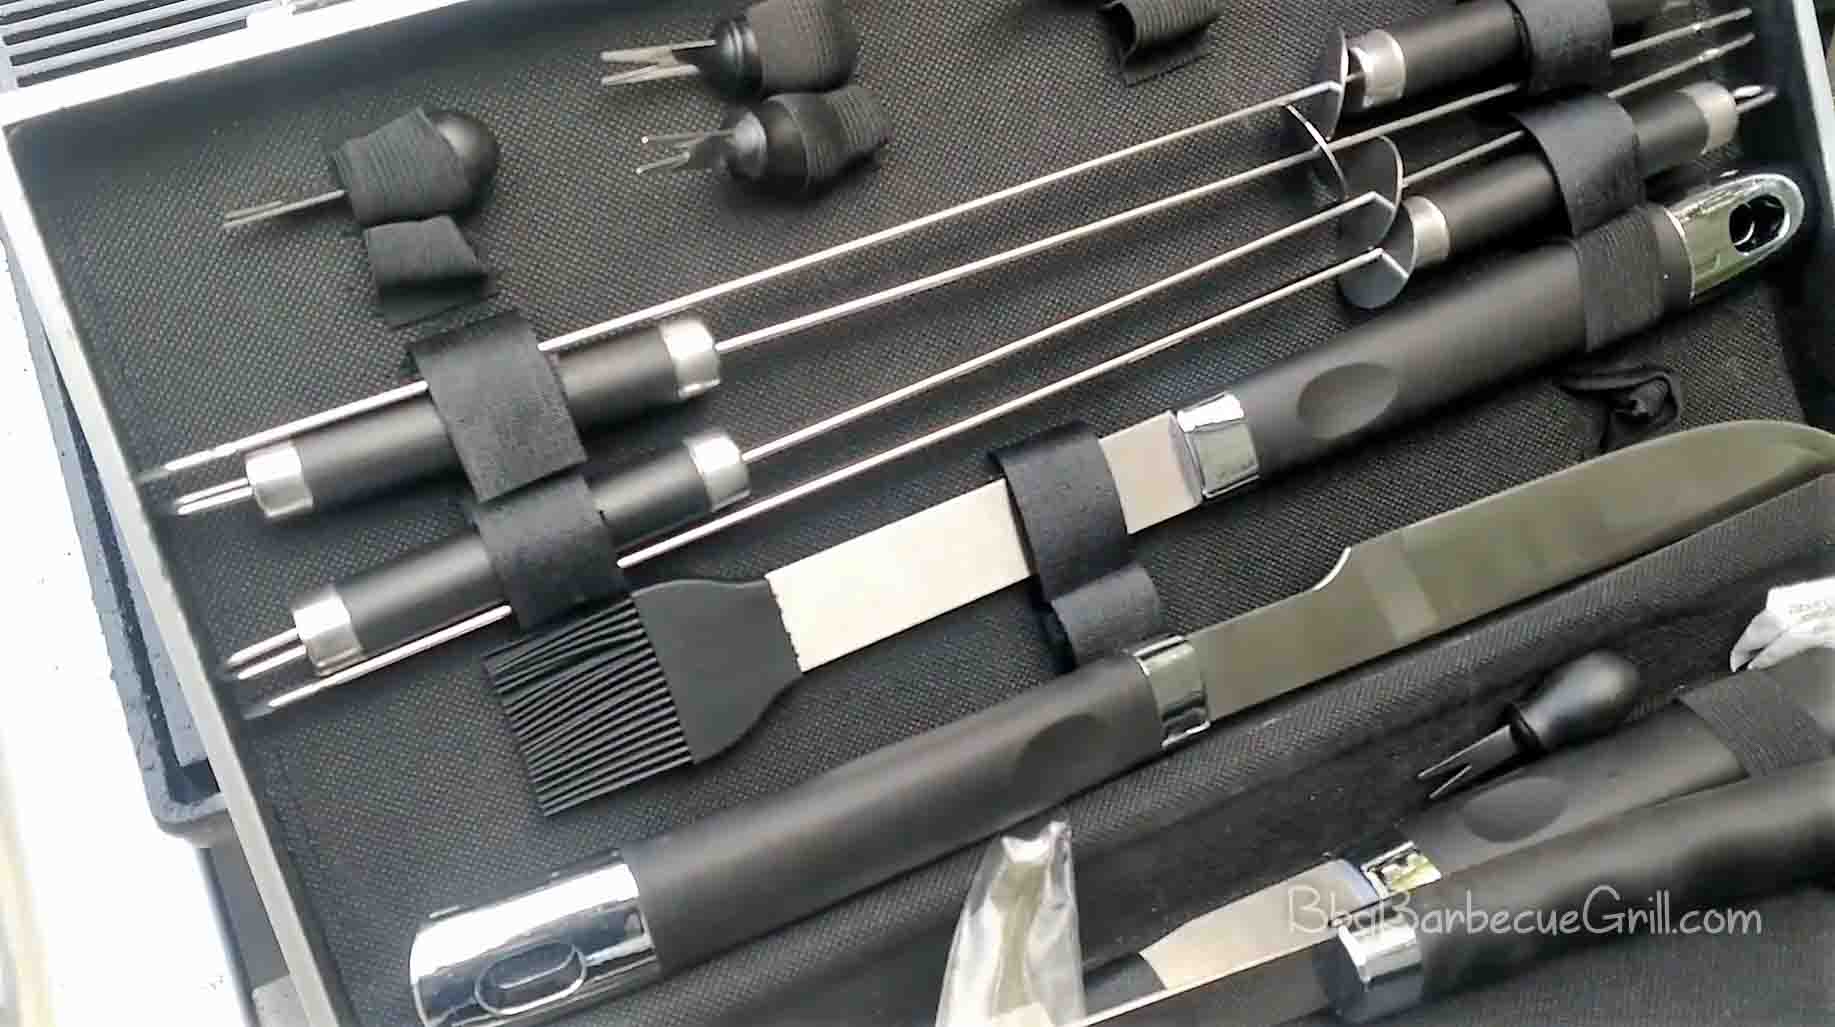 Best bbq tool kit